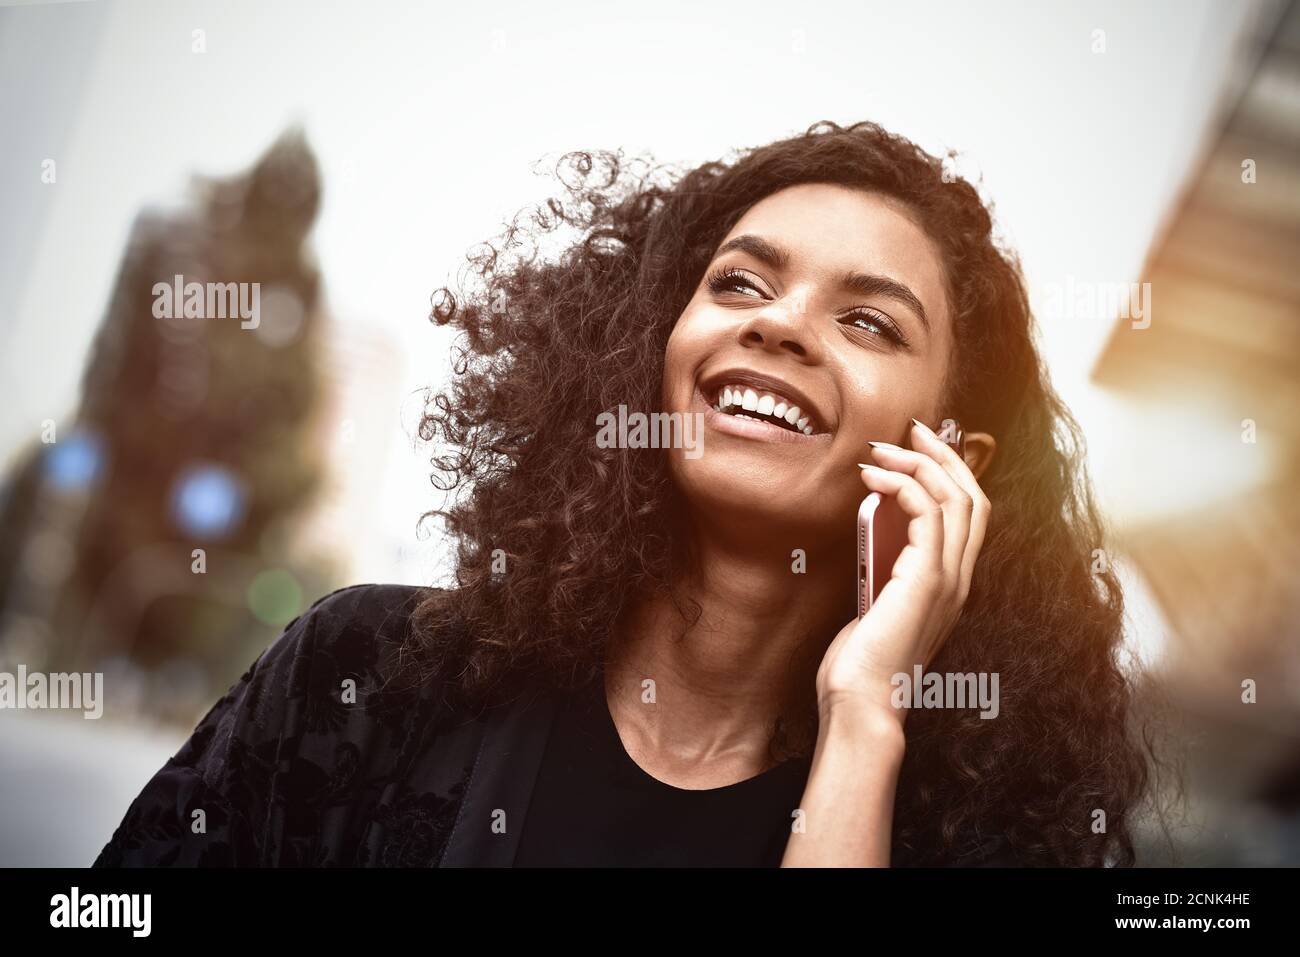 Positive Emotionen. Lifestyle-Konzept. Nahaufnahme der jungen Mischrasse Frau verwenden Sie ein Telefon. Stockfoto